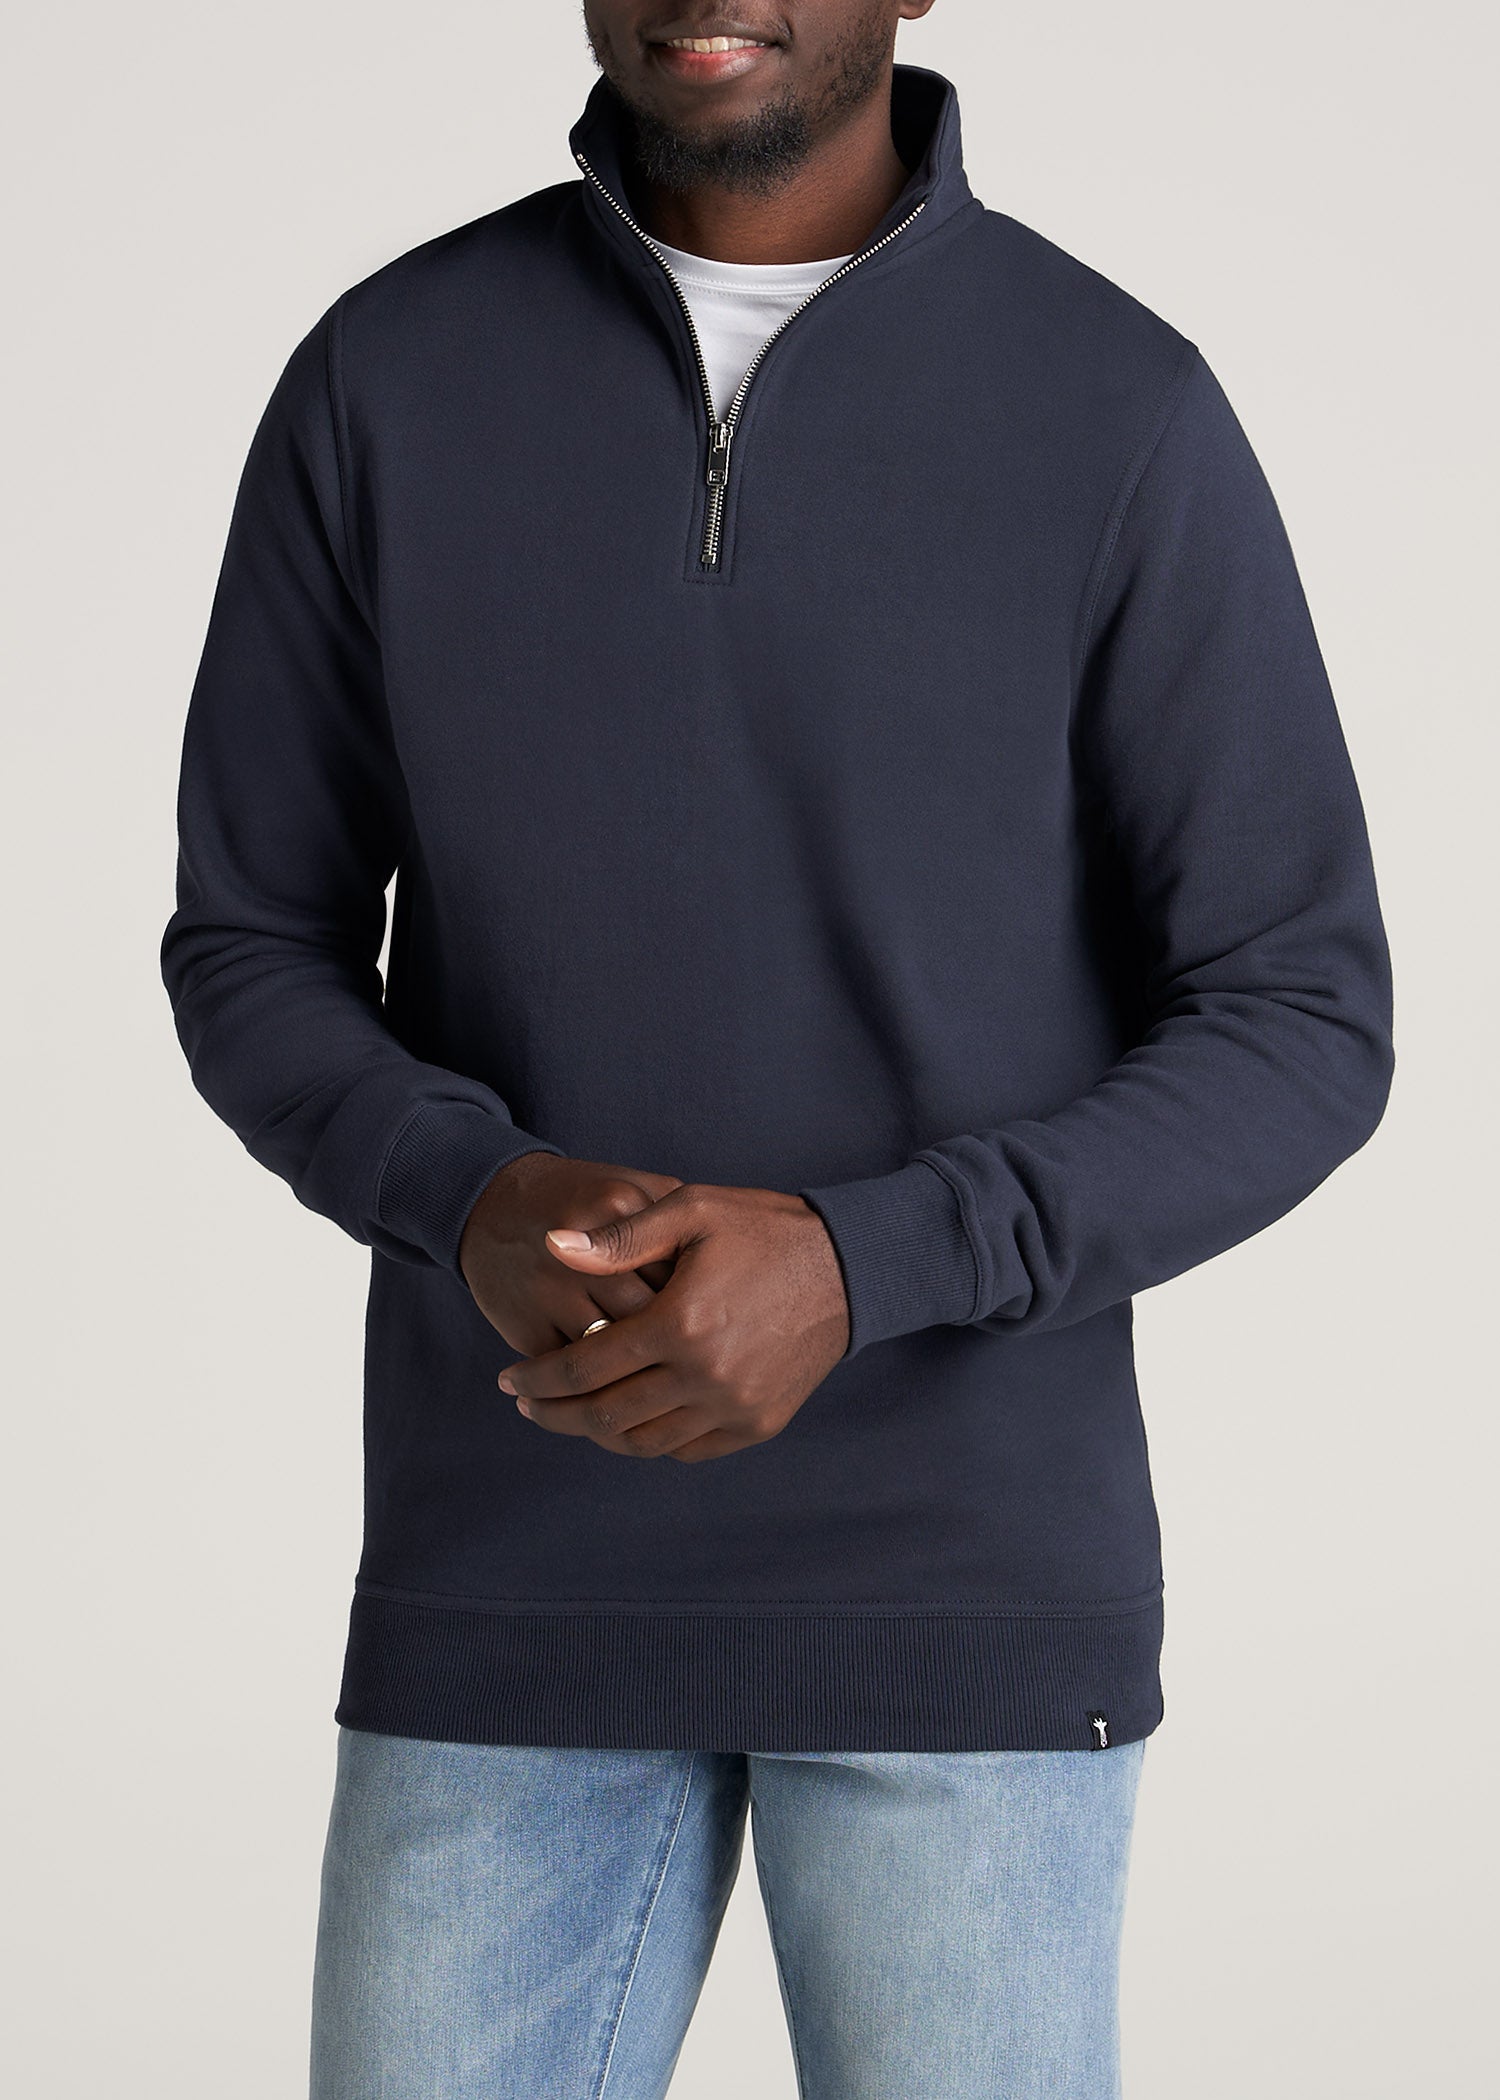 Wearever Fleece Quarter-Zip Tall Men's Sweatshirt in Navy